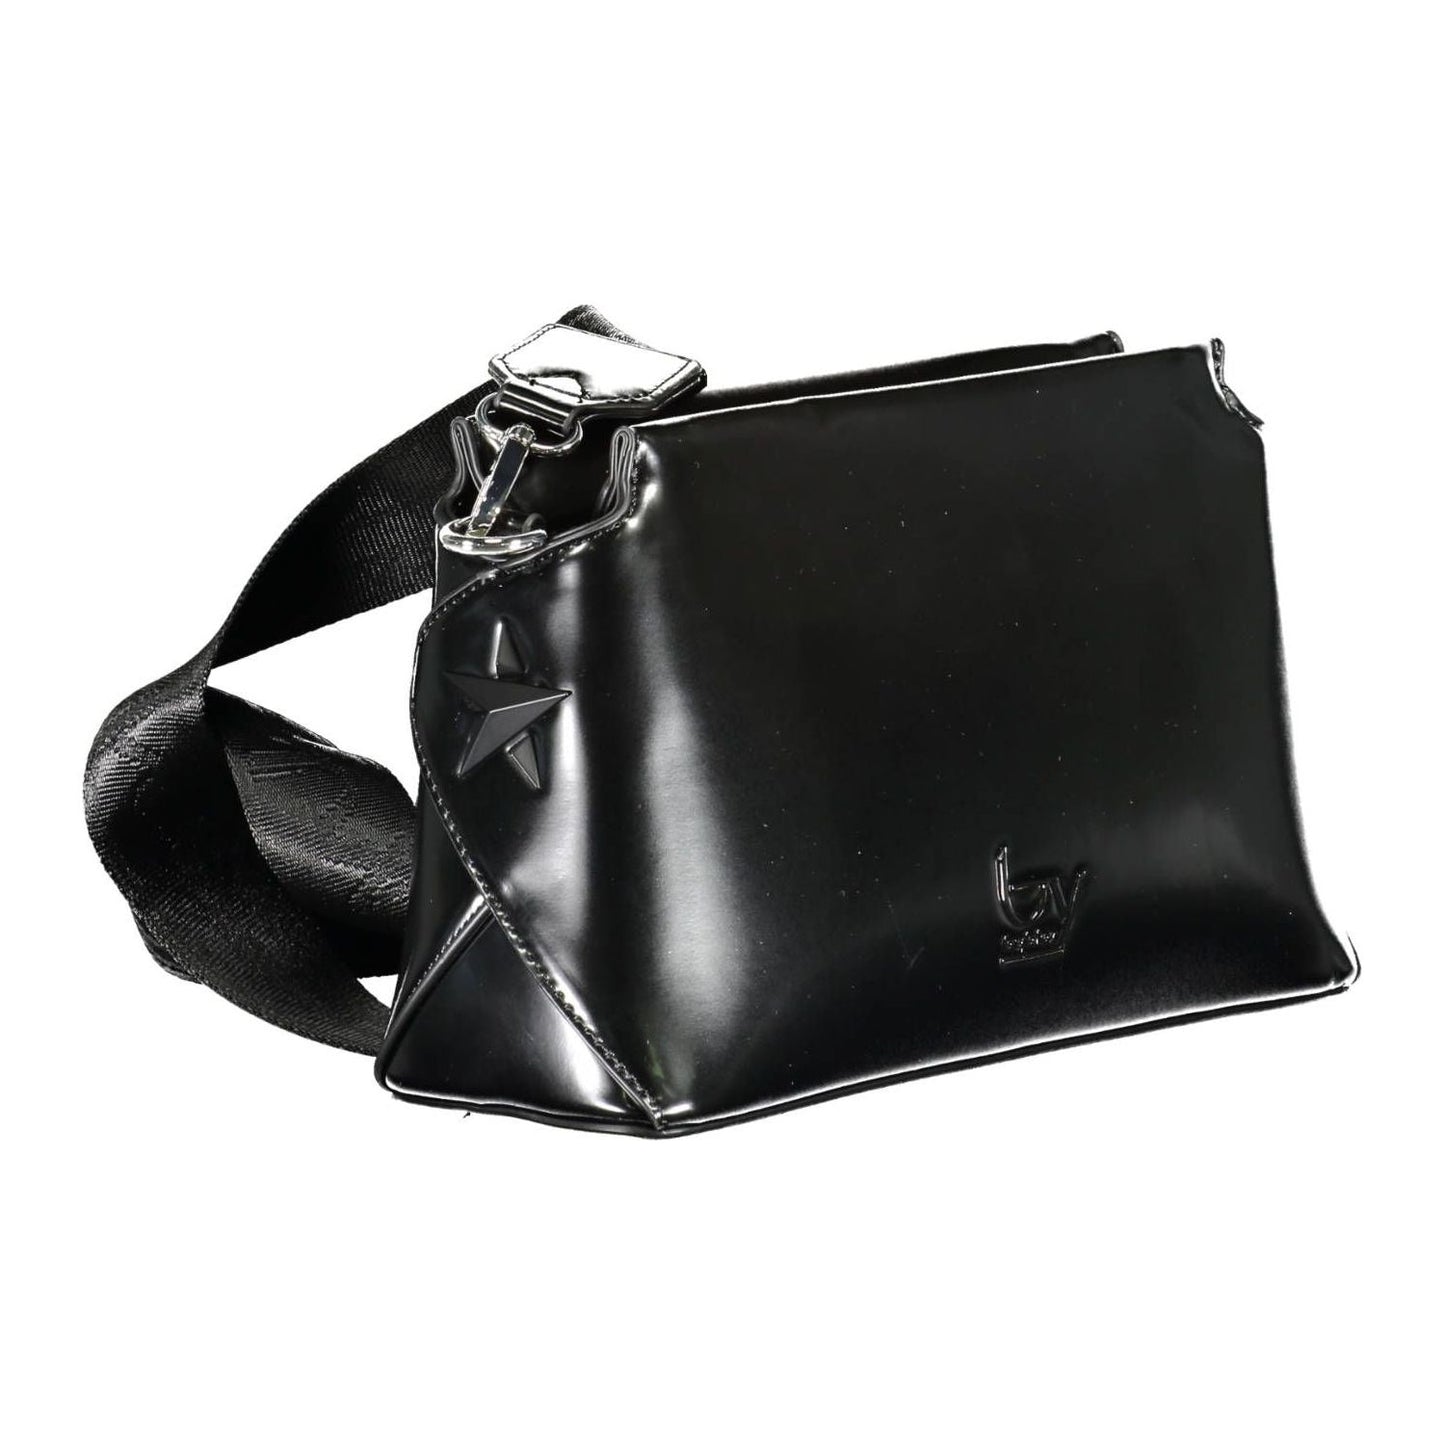 BYBLOS Elegant Black Contrasting Details Shoulder Bag elegant-black-contrasting-details-shoulder-bag